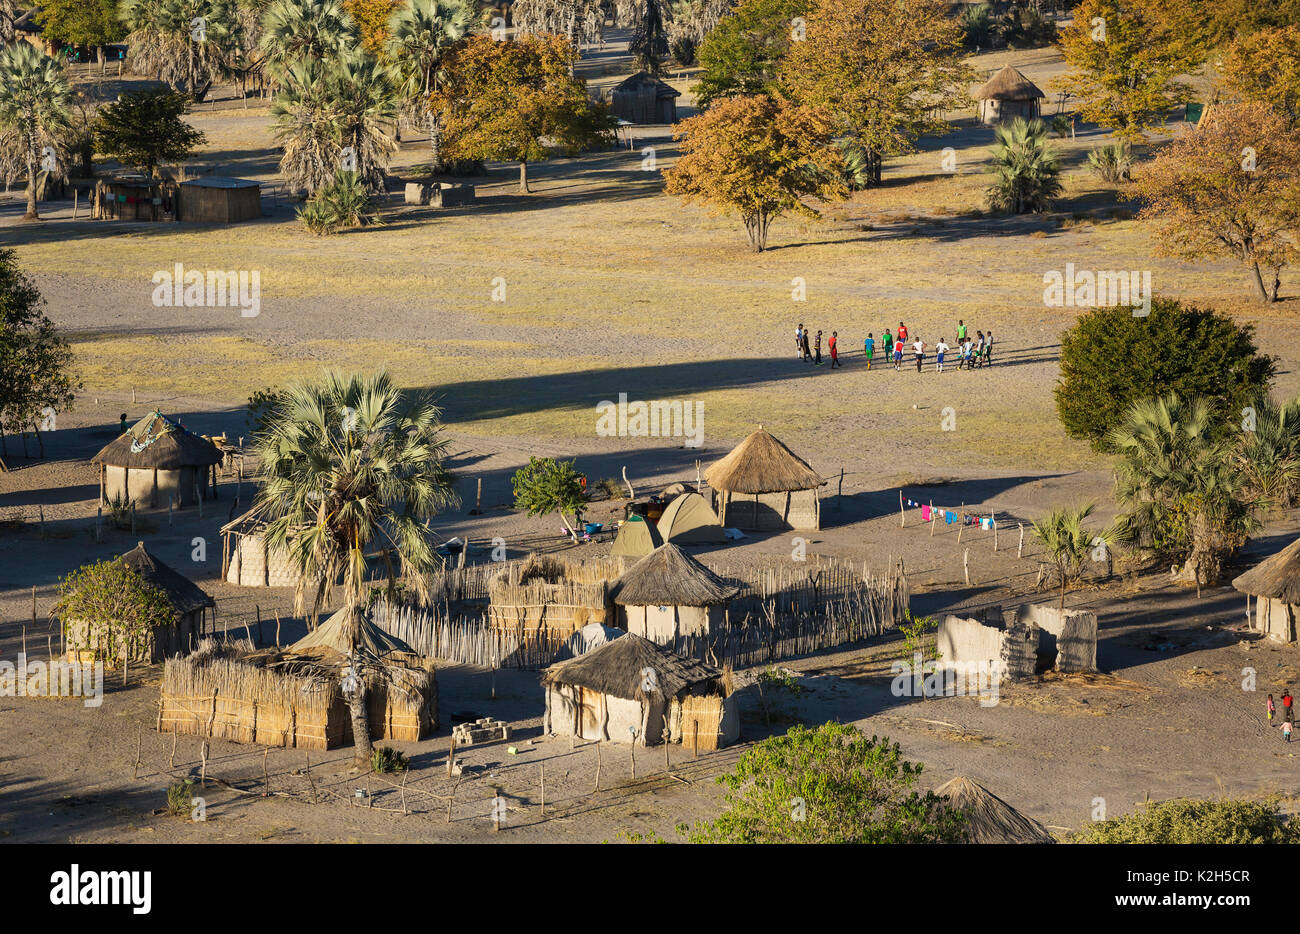 Villaggio nativo appena al di fuori della zona protetta, prominente di un gruppo di giovani uomini pronti per una partita di calcio, vista aerea, Okavango Delta, Botswana Foto Stock